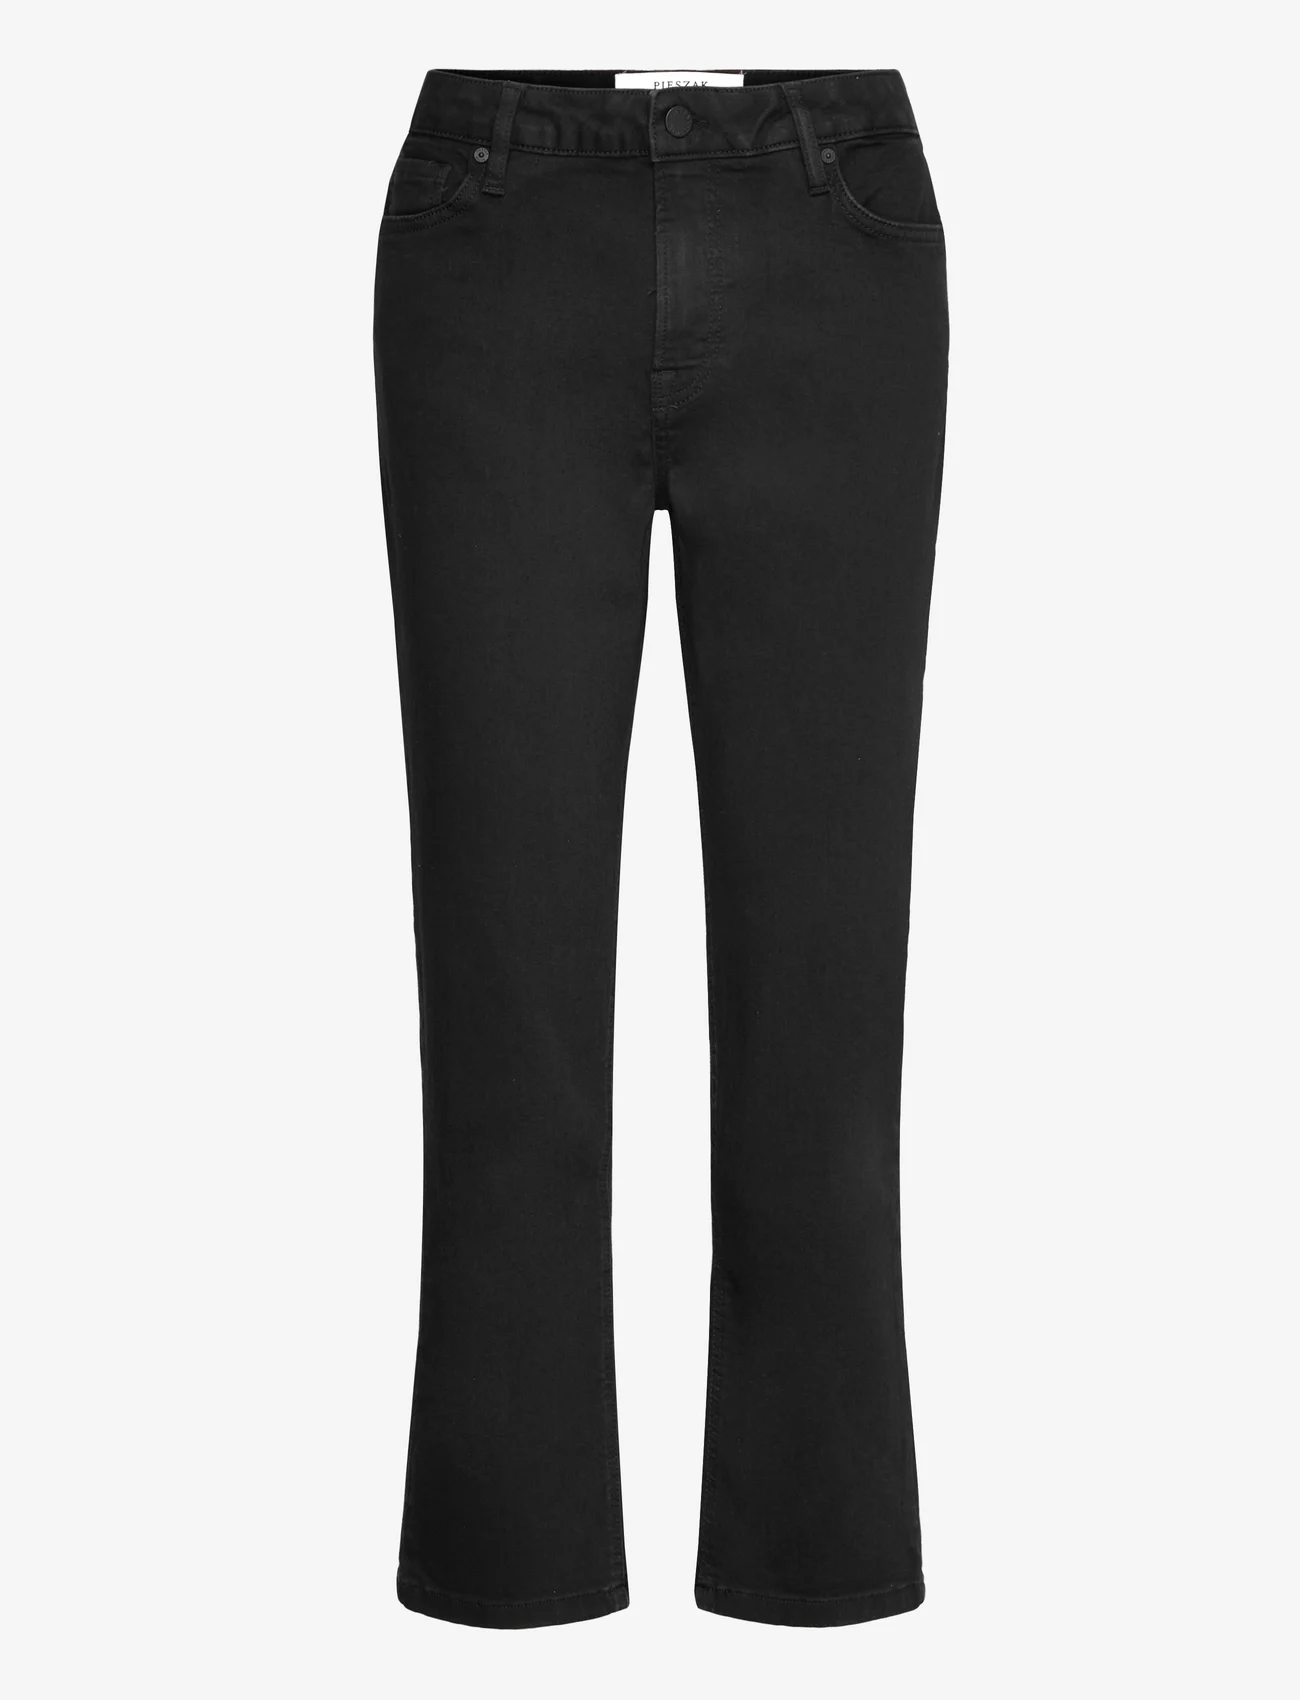 Pieszak - PD-Trisha Jeans Wash Support Deep B - raka jeans - black - 0